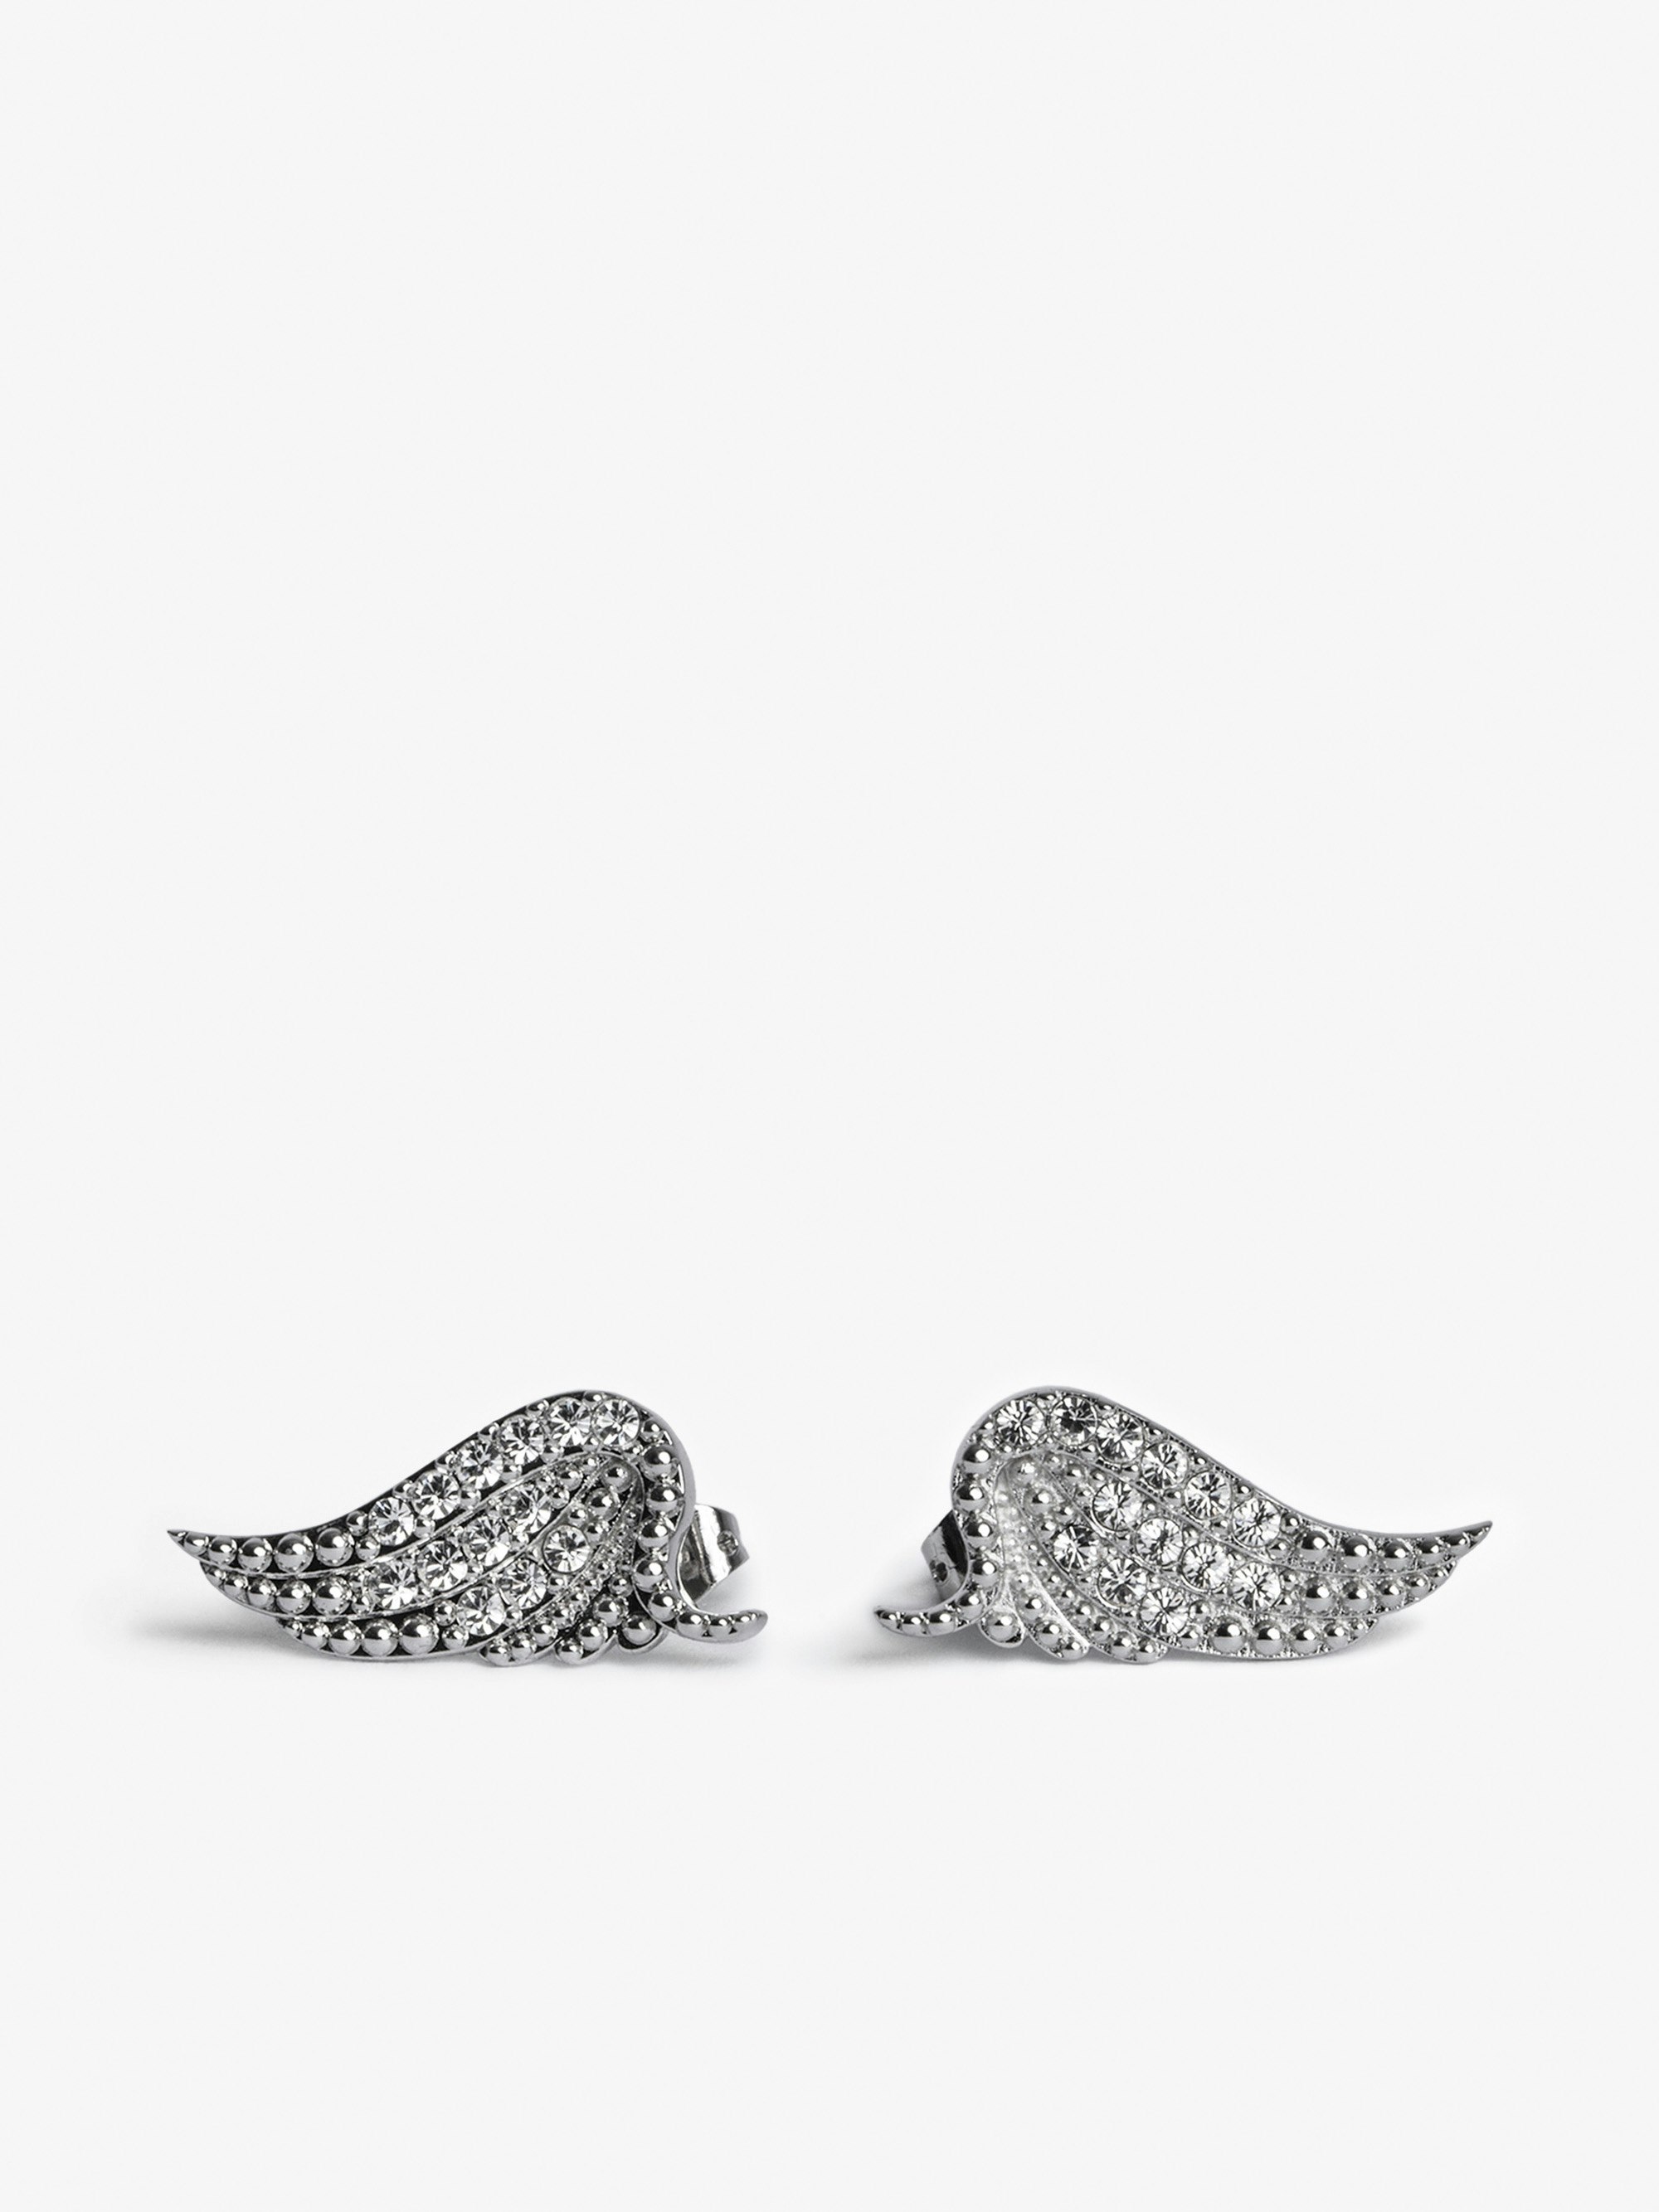 Boucles D'oreilles Rock - Boucles d'oreille ailes ornées de cristaux en laiton.